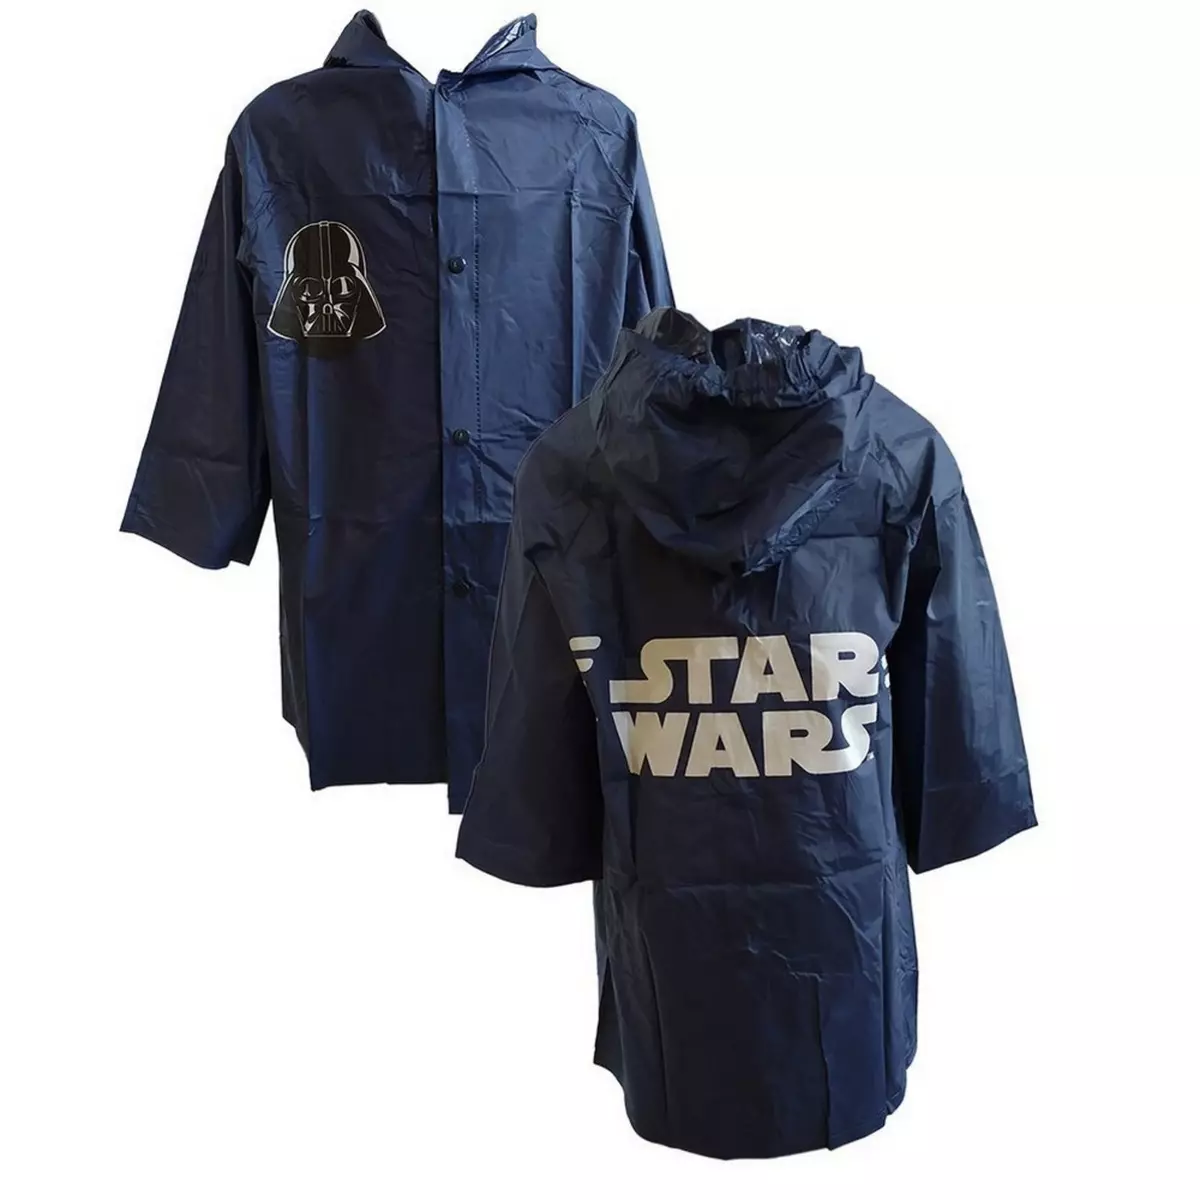 Star Wars Veste de pluie Star Wars 5 / 6 ans impermeable F